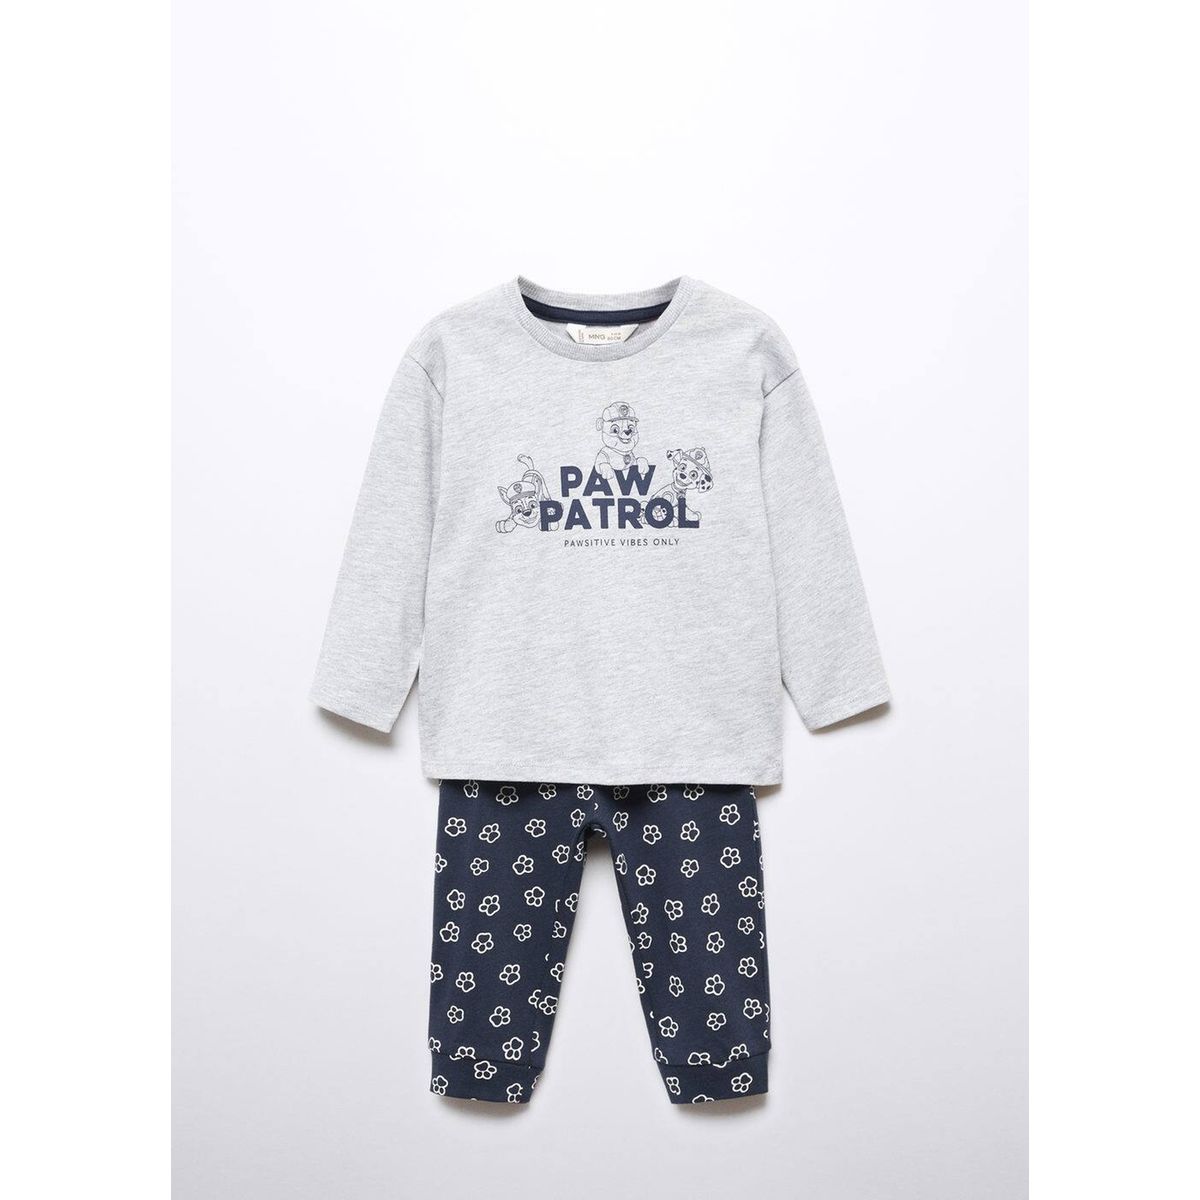 Pyjama noël bébé garçon Disney® Mickey - gris chiné, Bébé